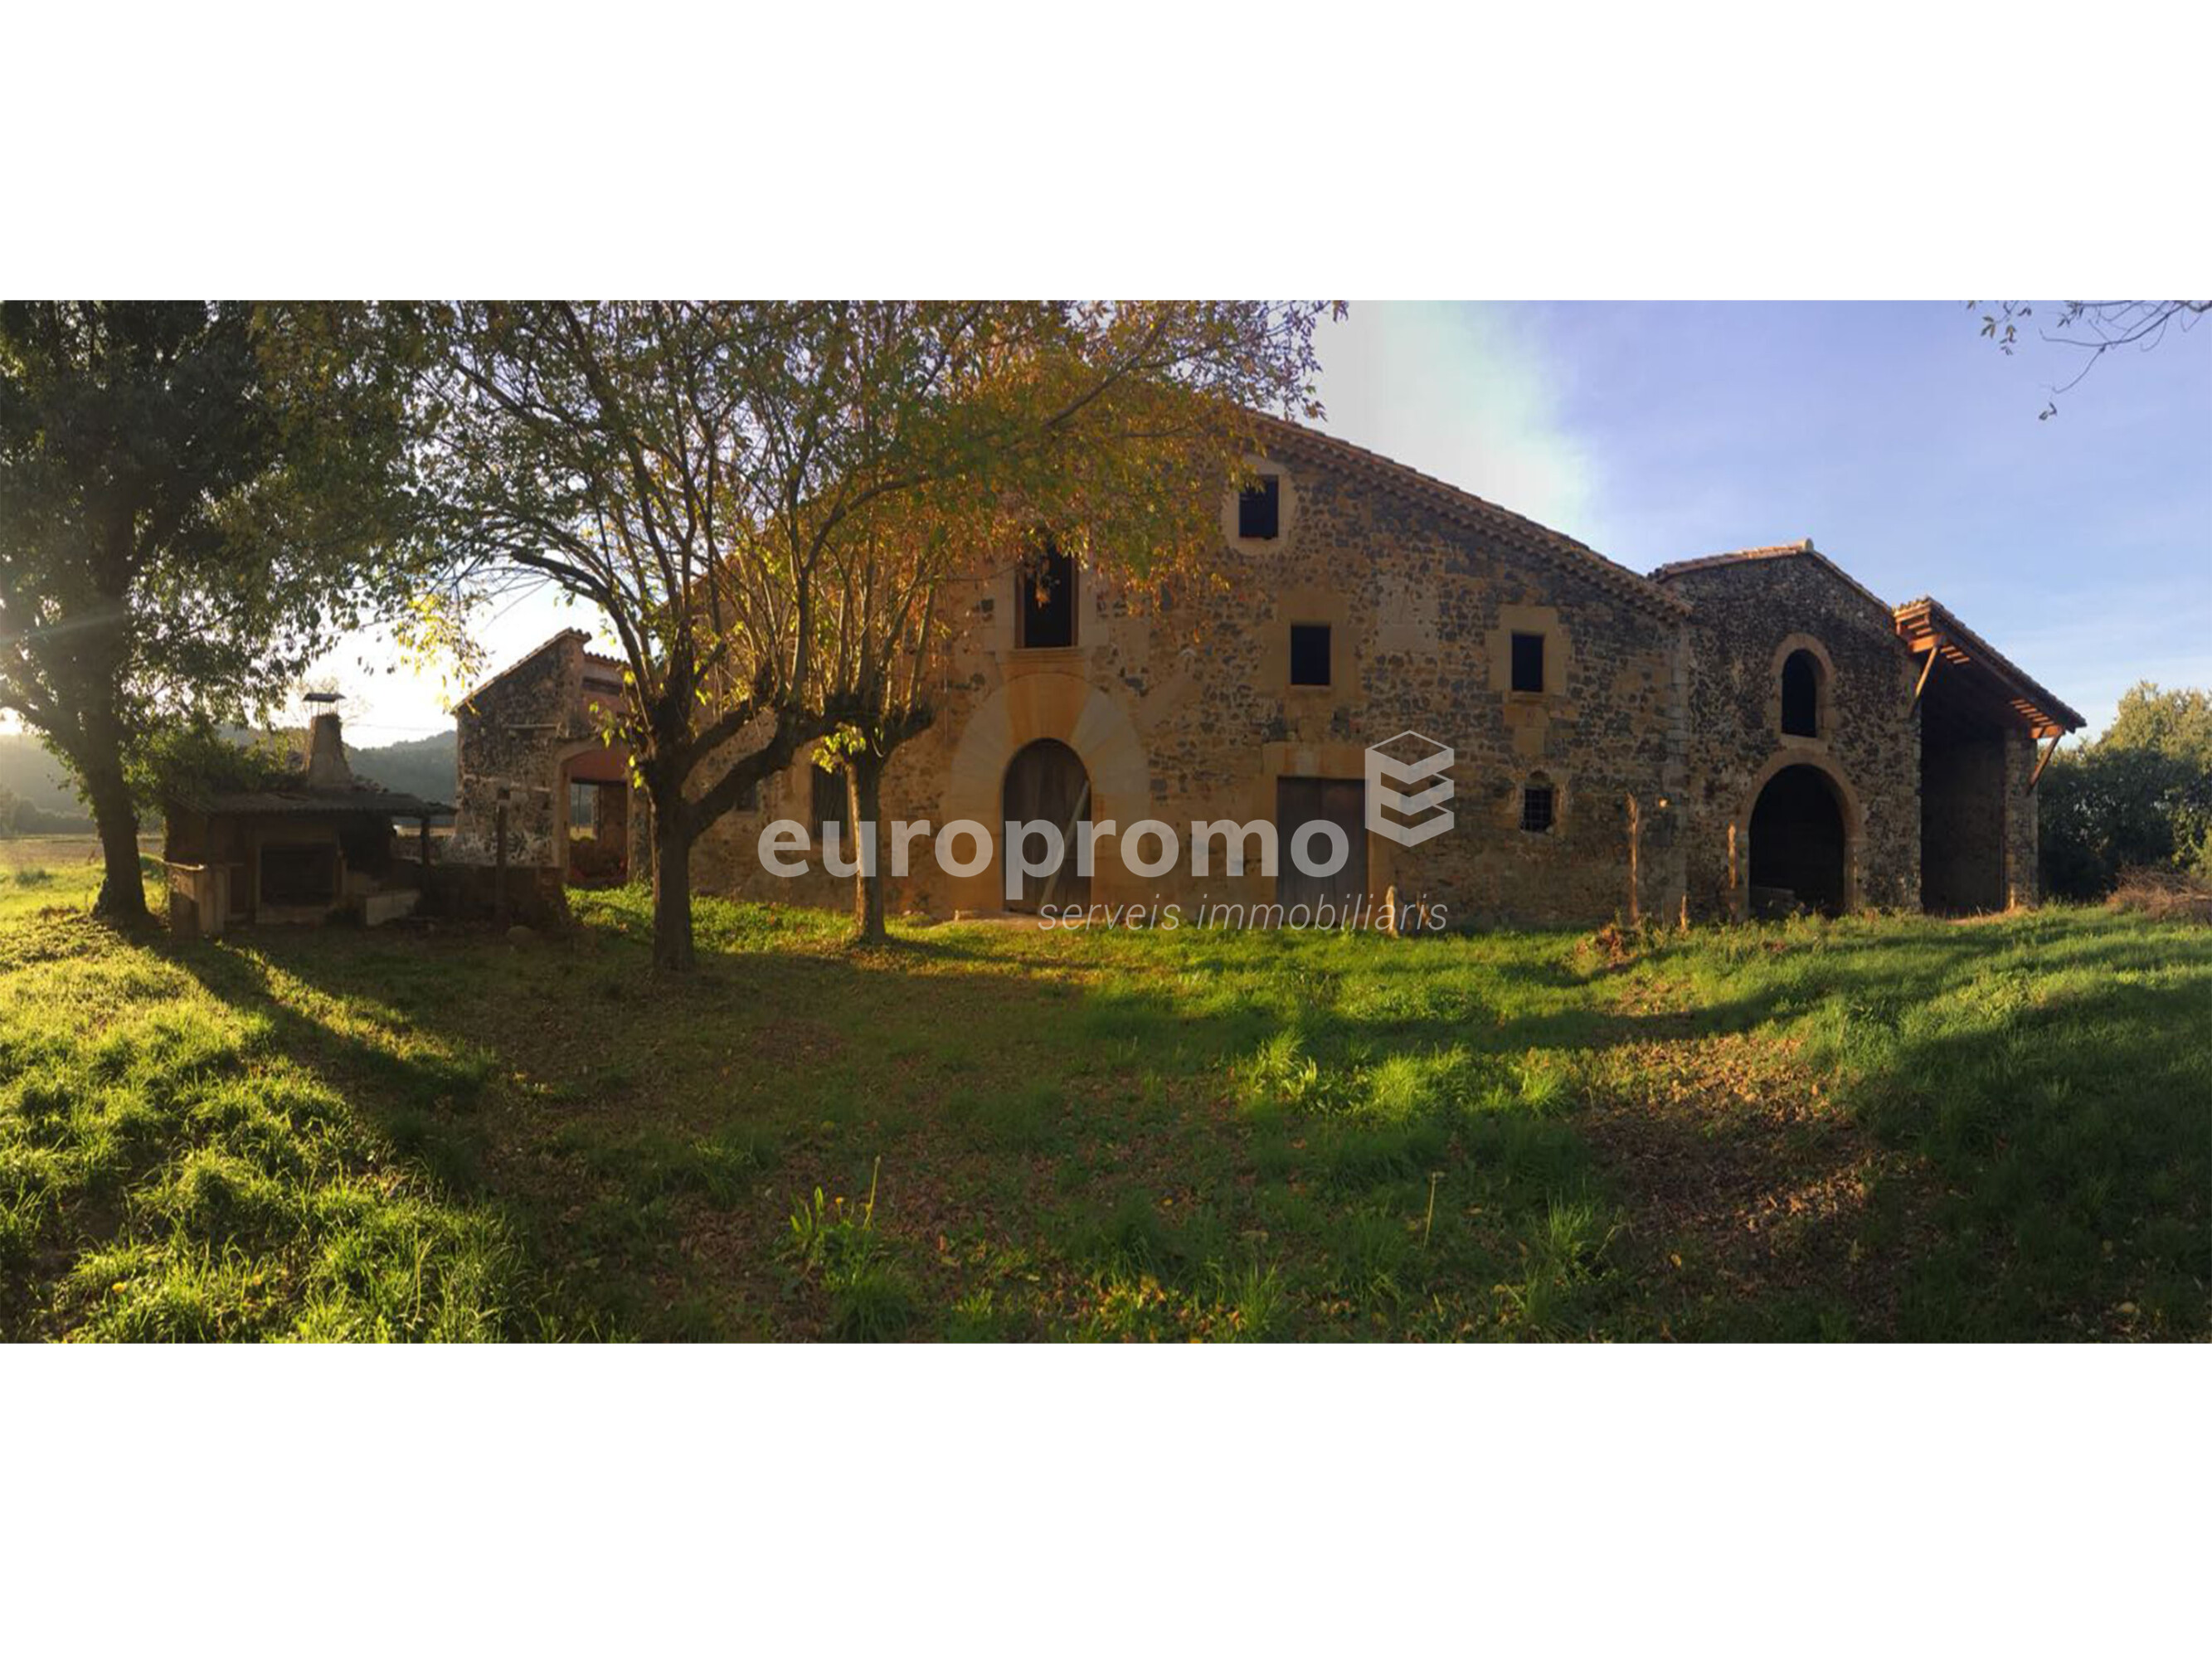 Fantàstica masia a Canet d'Adri